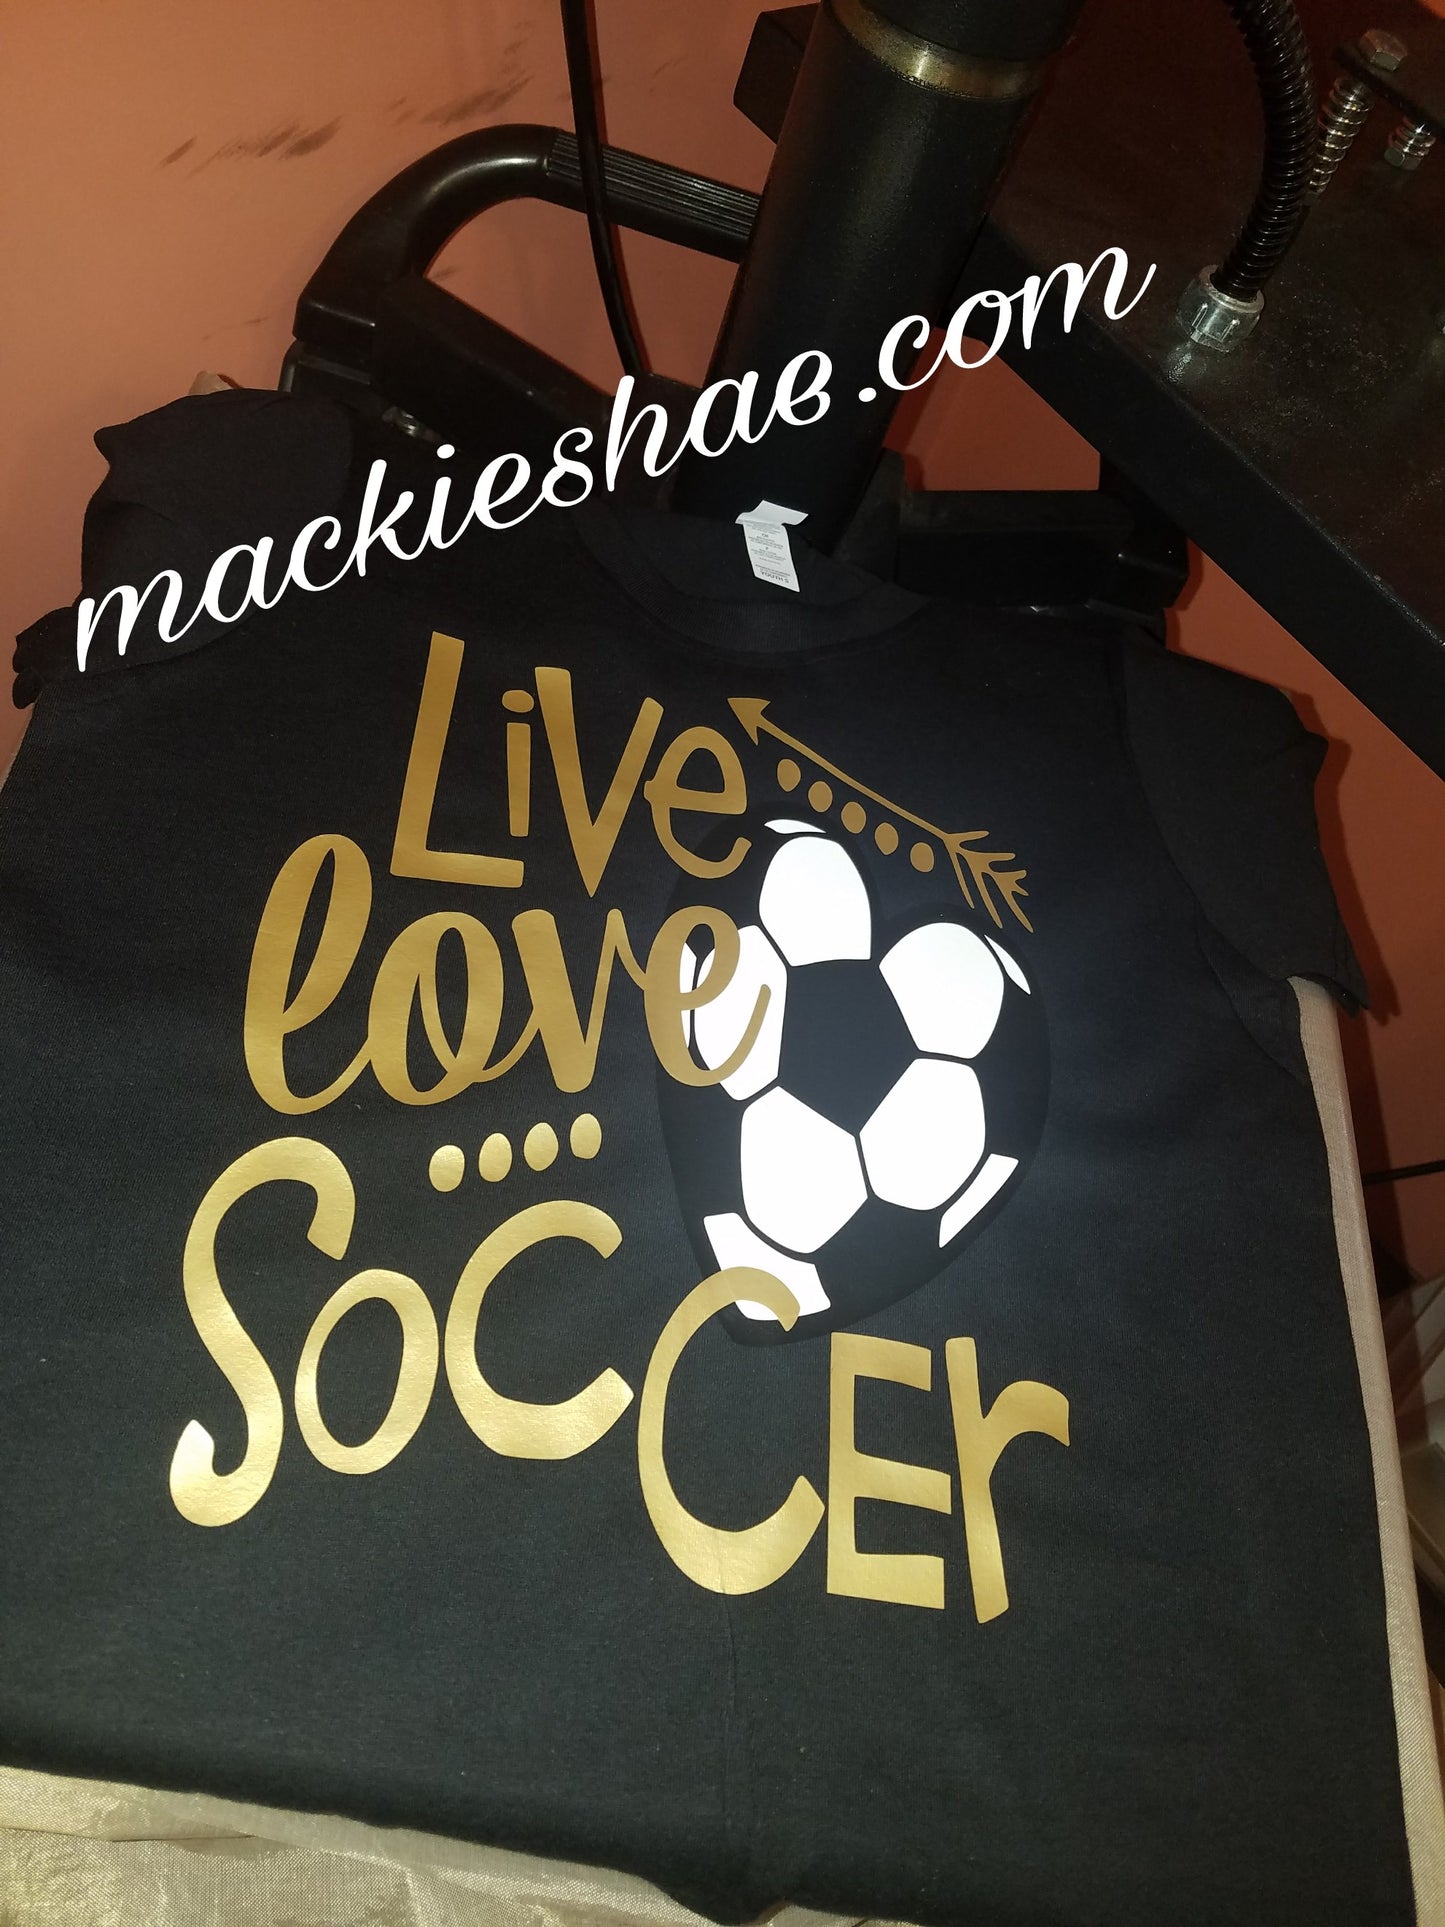 Live Love Soccer Custom Shirt for Kids, Short Sleeve